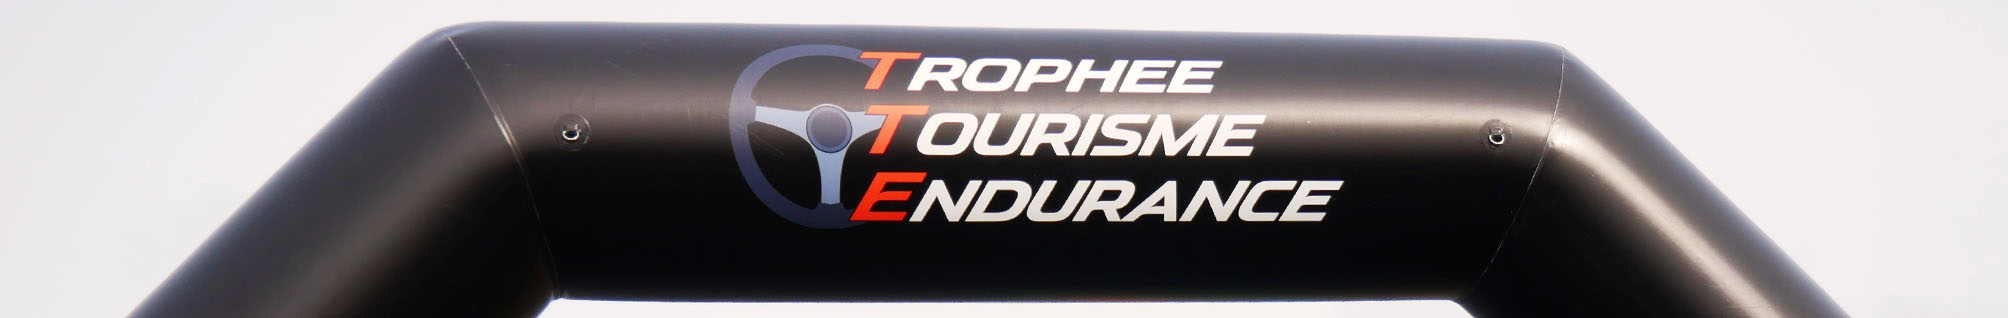 Bannière Trophée Tourisme Endurance